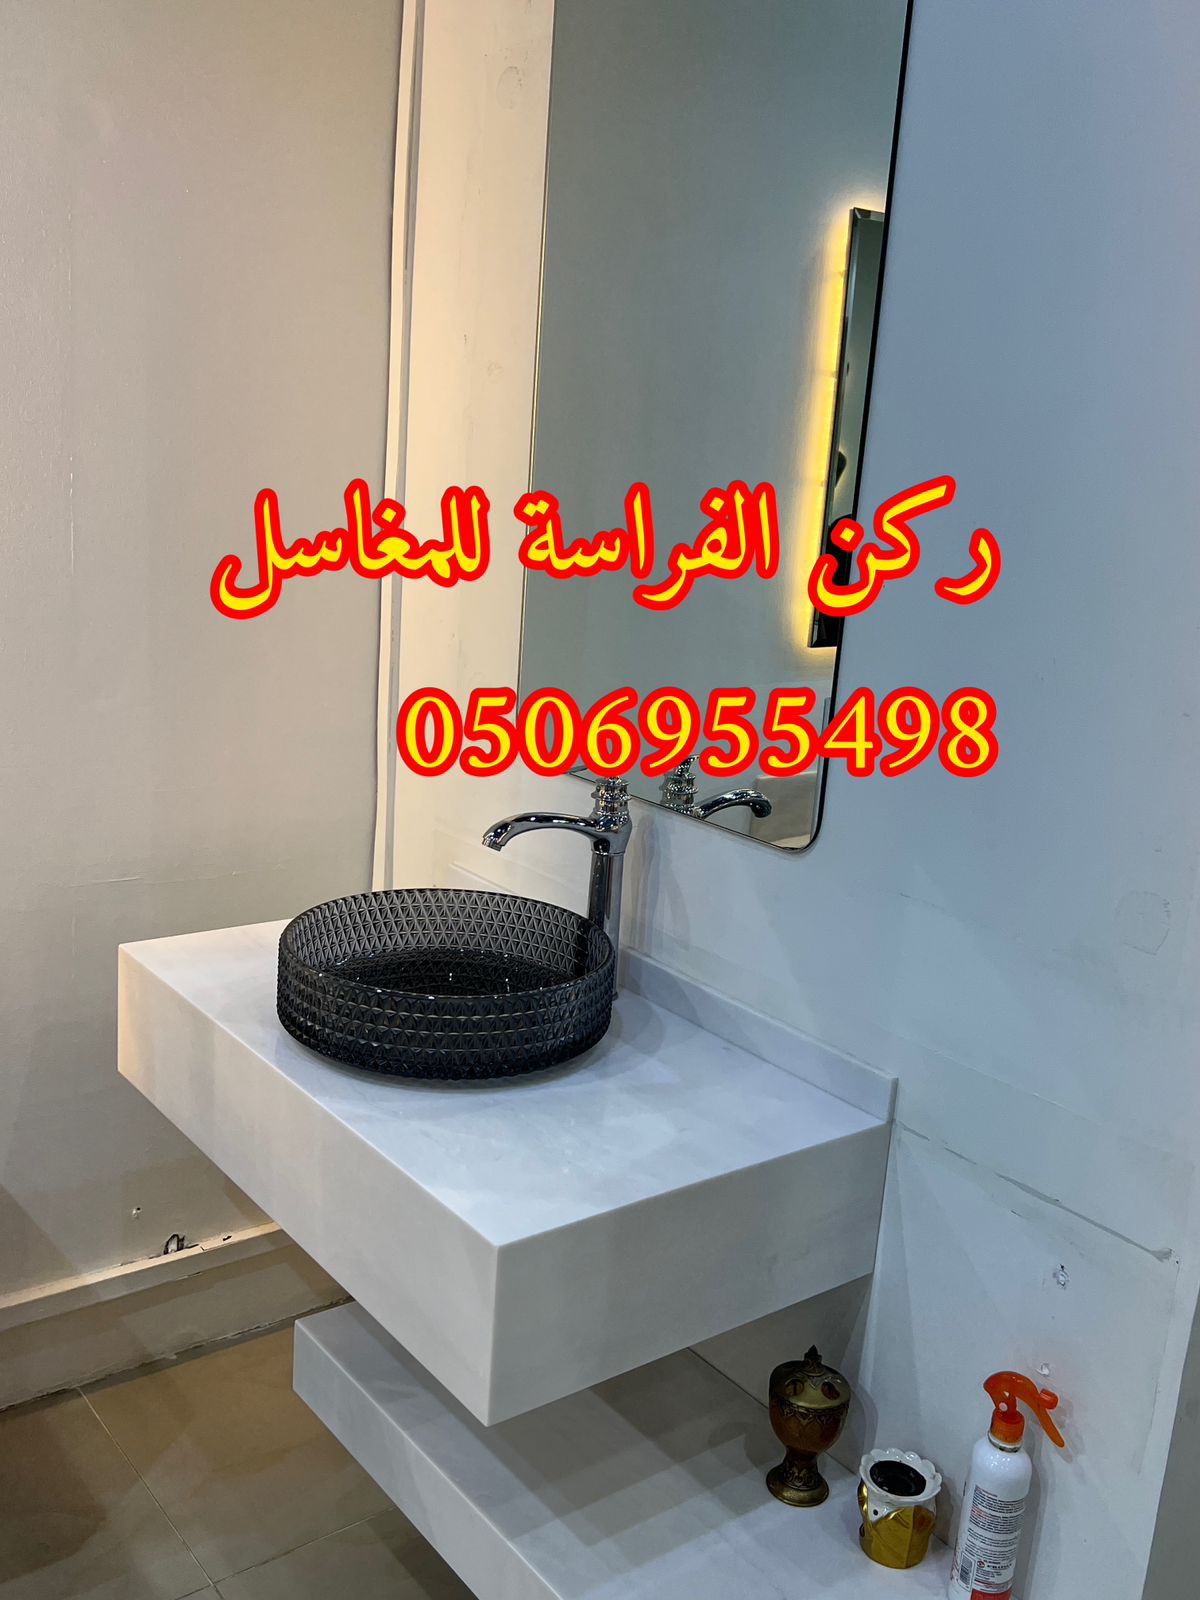 اشكال مغاسل رخام طبيعي وصناعي في الرياض,0506955498